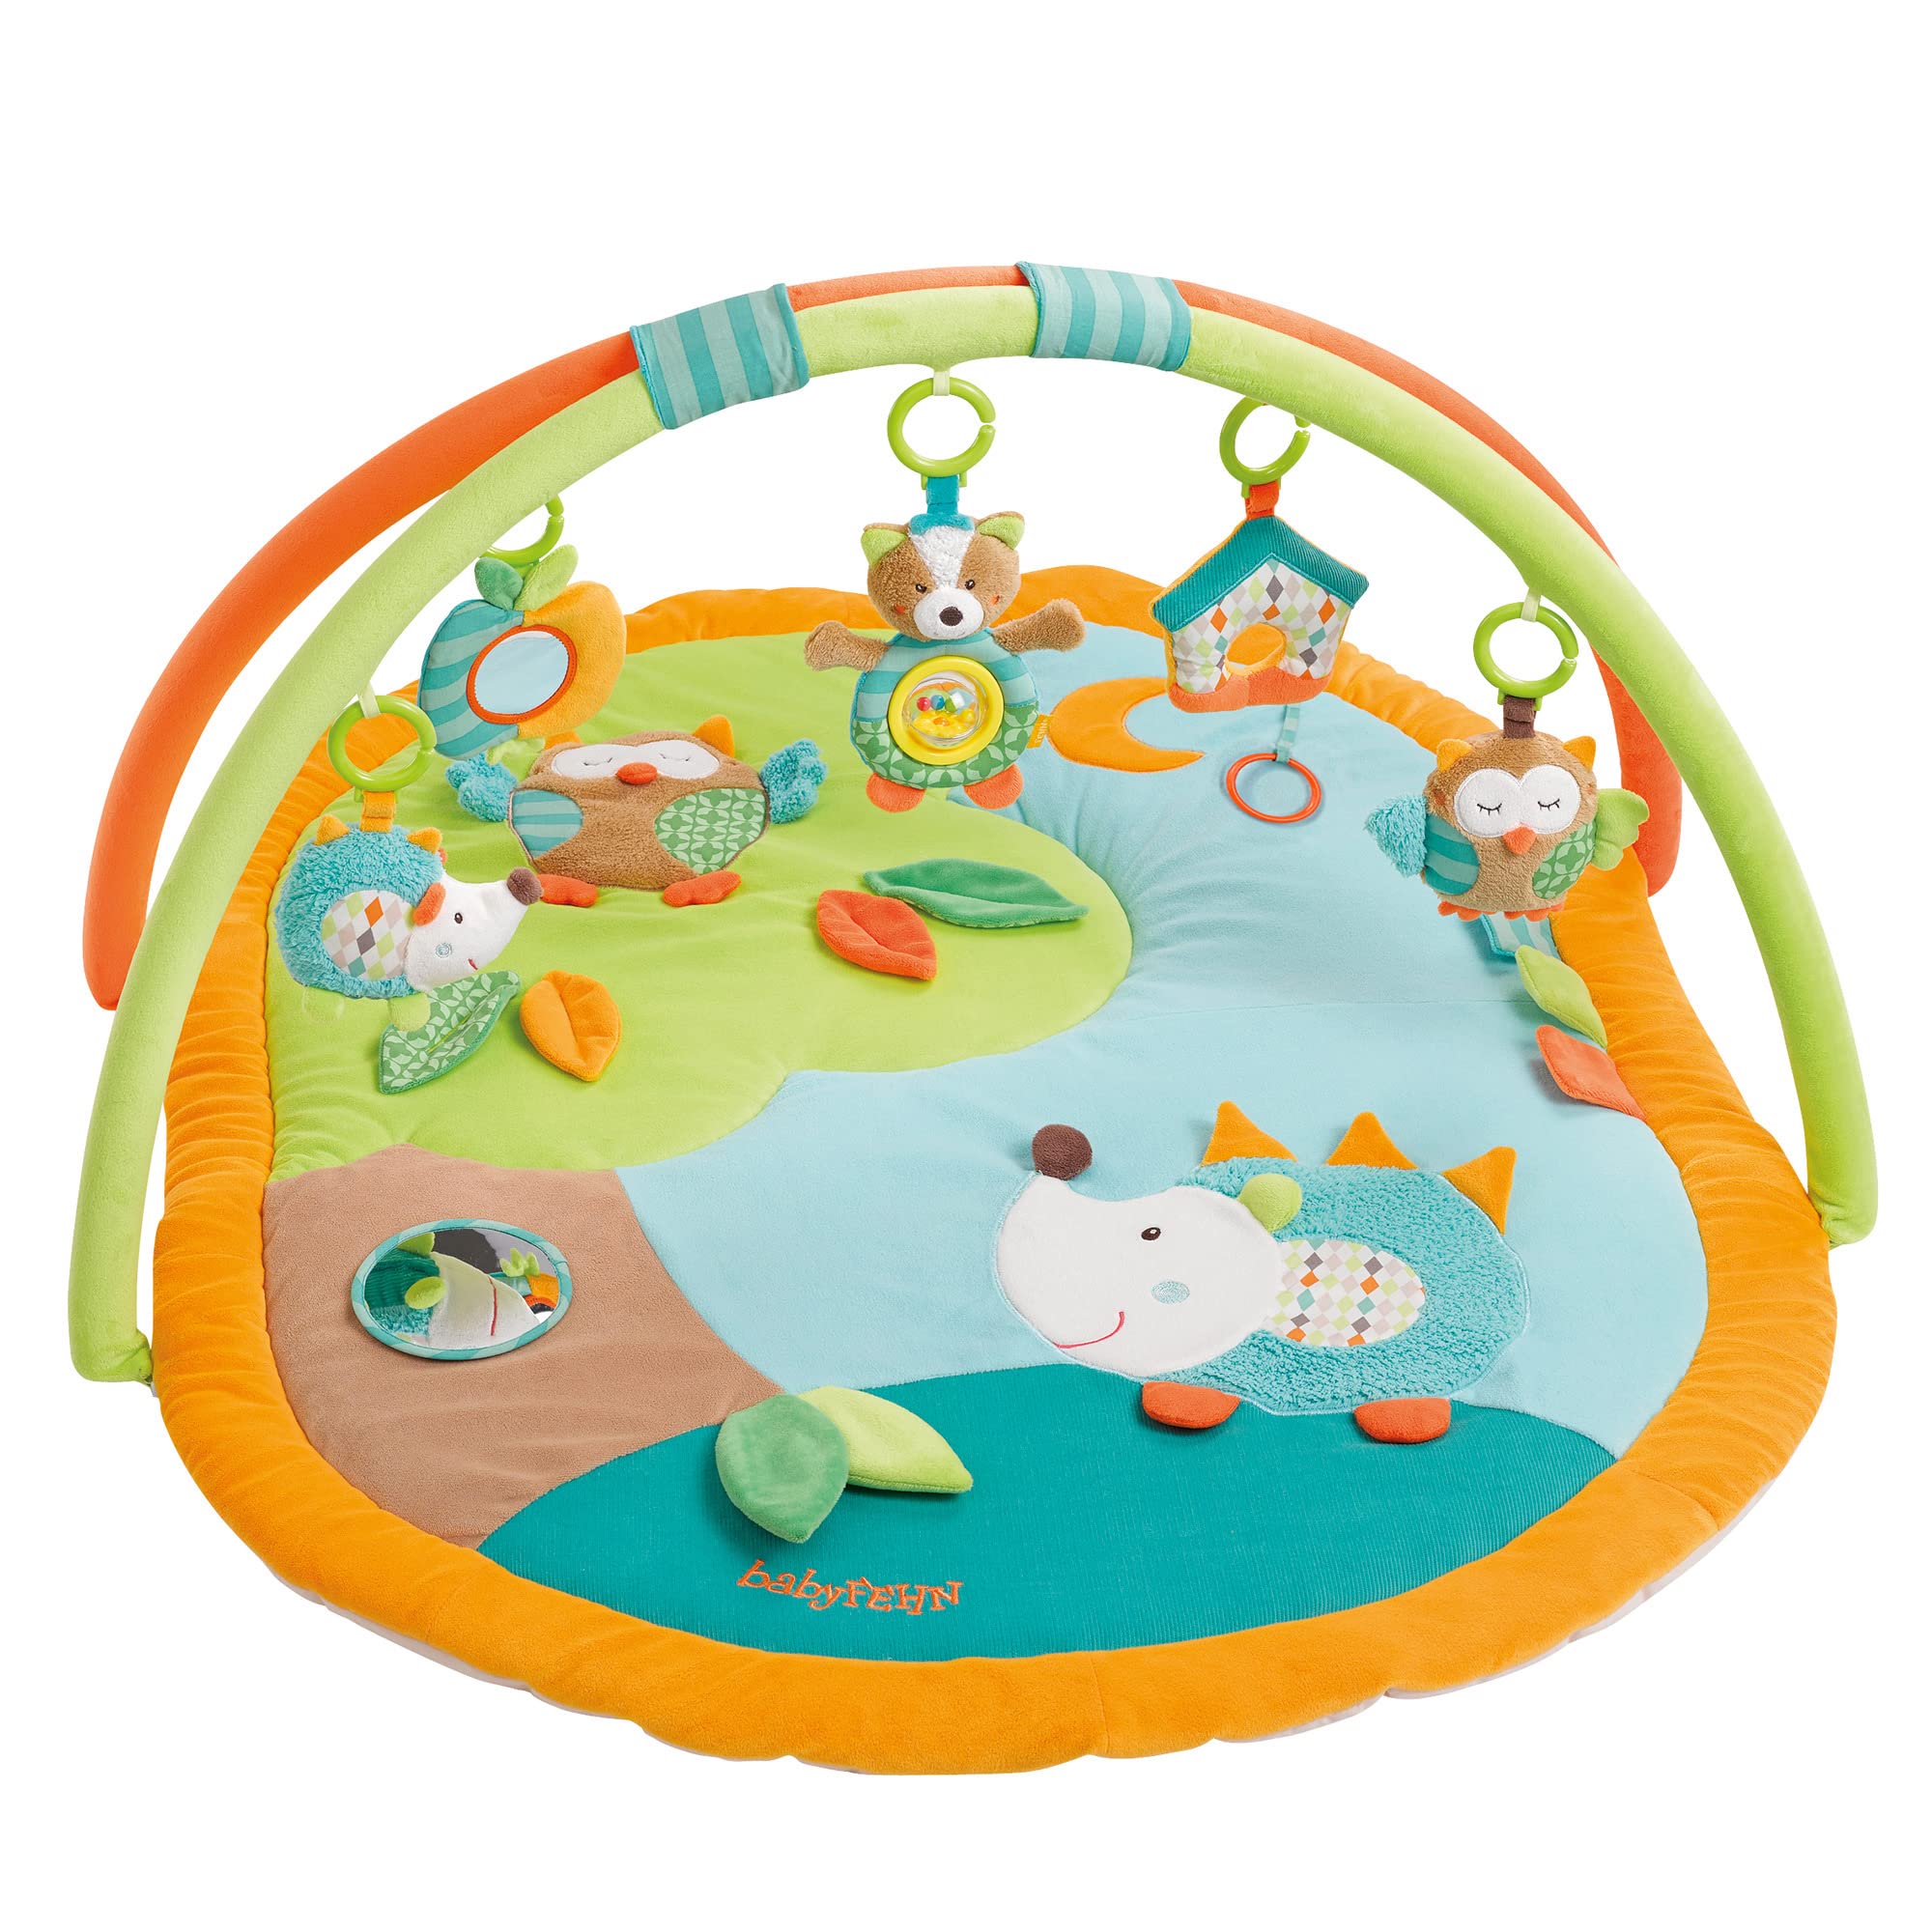 Fehn 3-D-Activity-Decke Spielbogen Sleeping Forest – Krabbeldecke mit 5 abnehmbaren Spielzeugen zum Greifen – Spieldecke für Babys und Kinder ab 0+ Monaten – Krabbelmatte als Geschenk zur Geburt